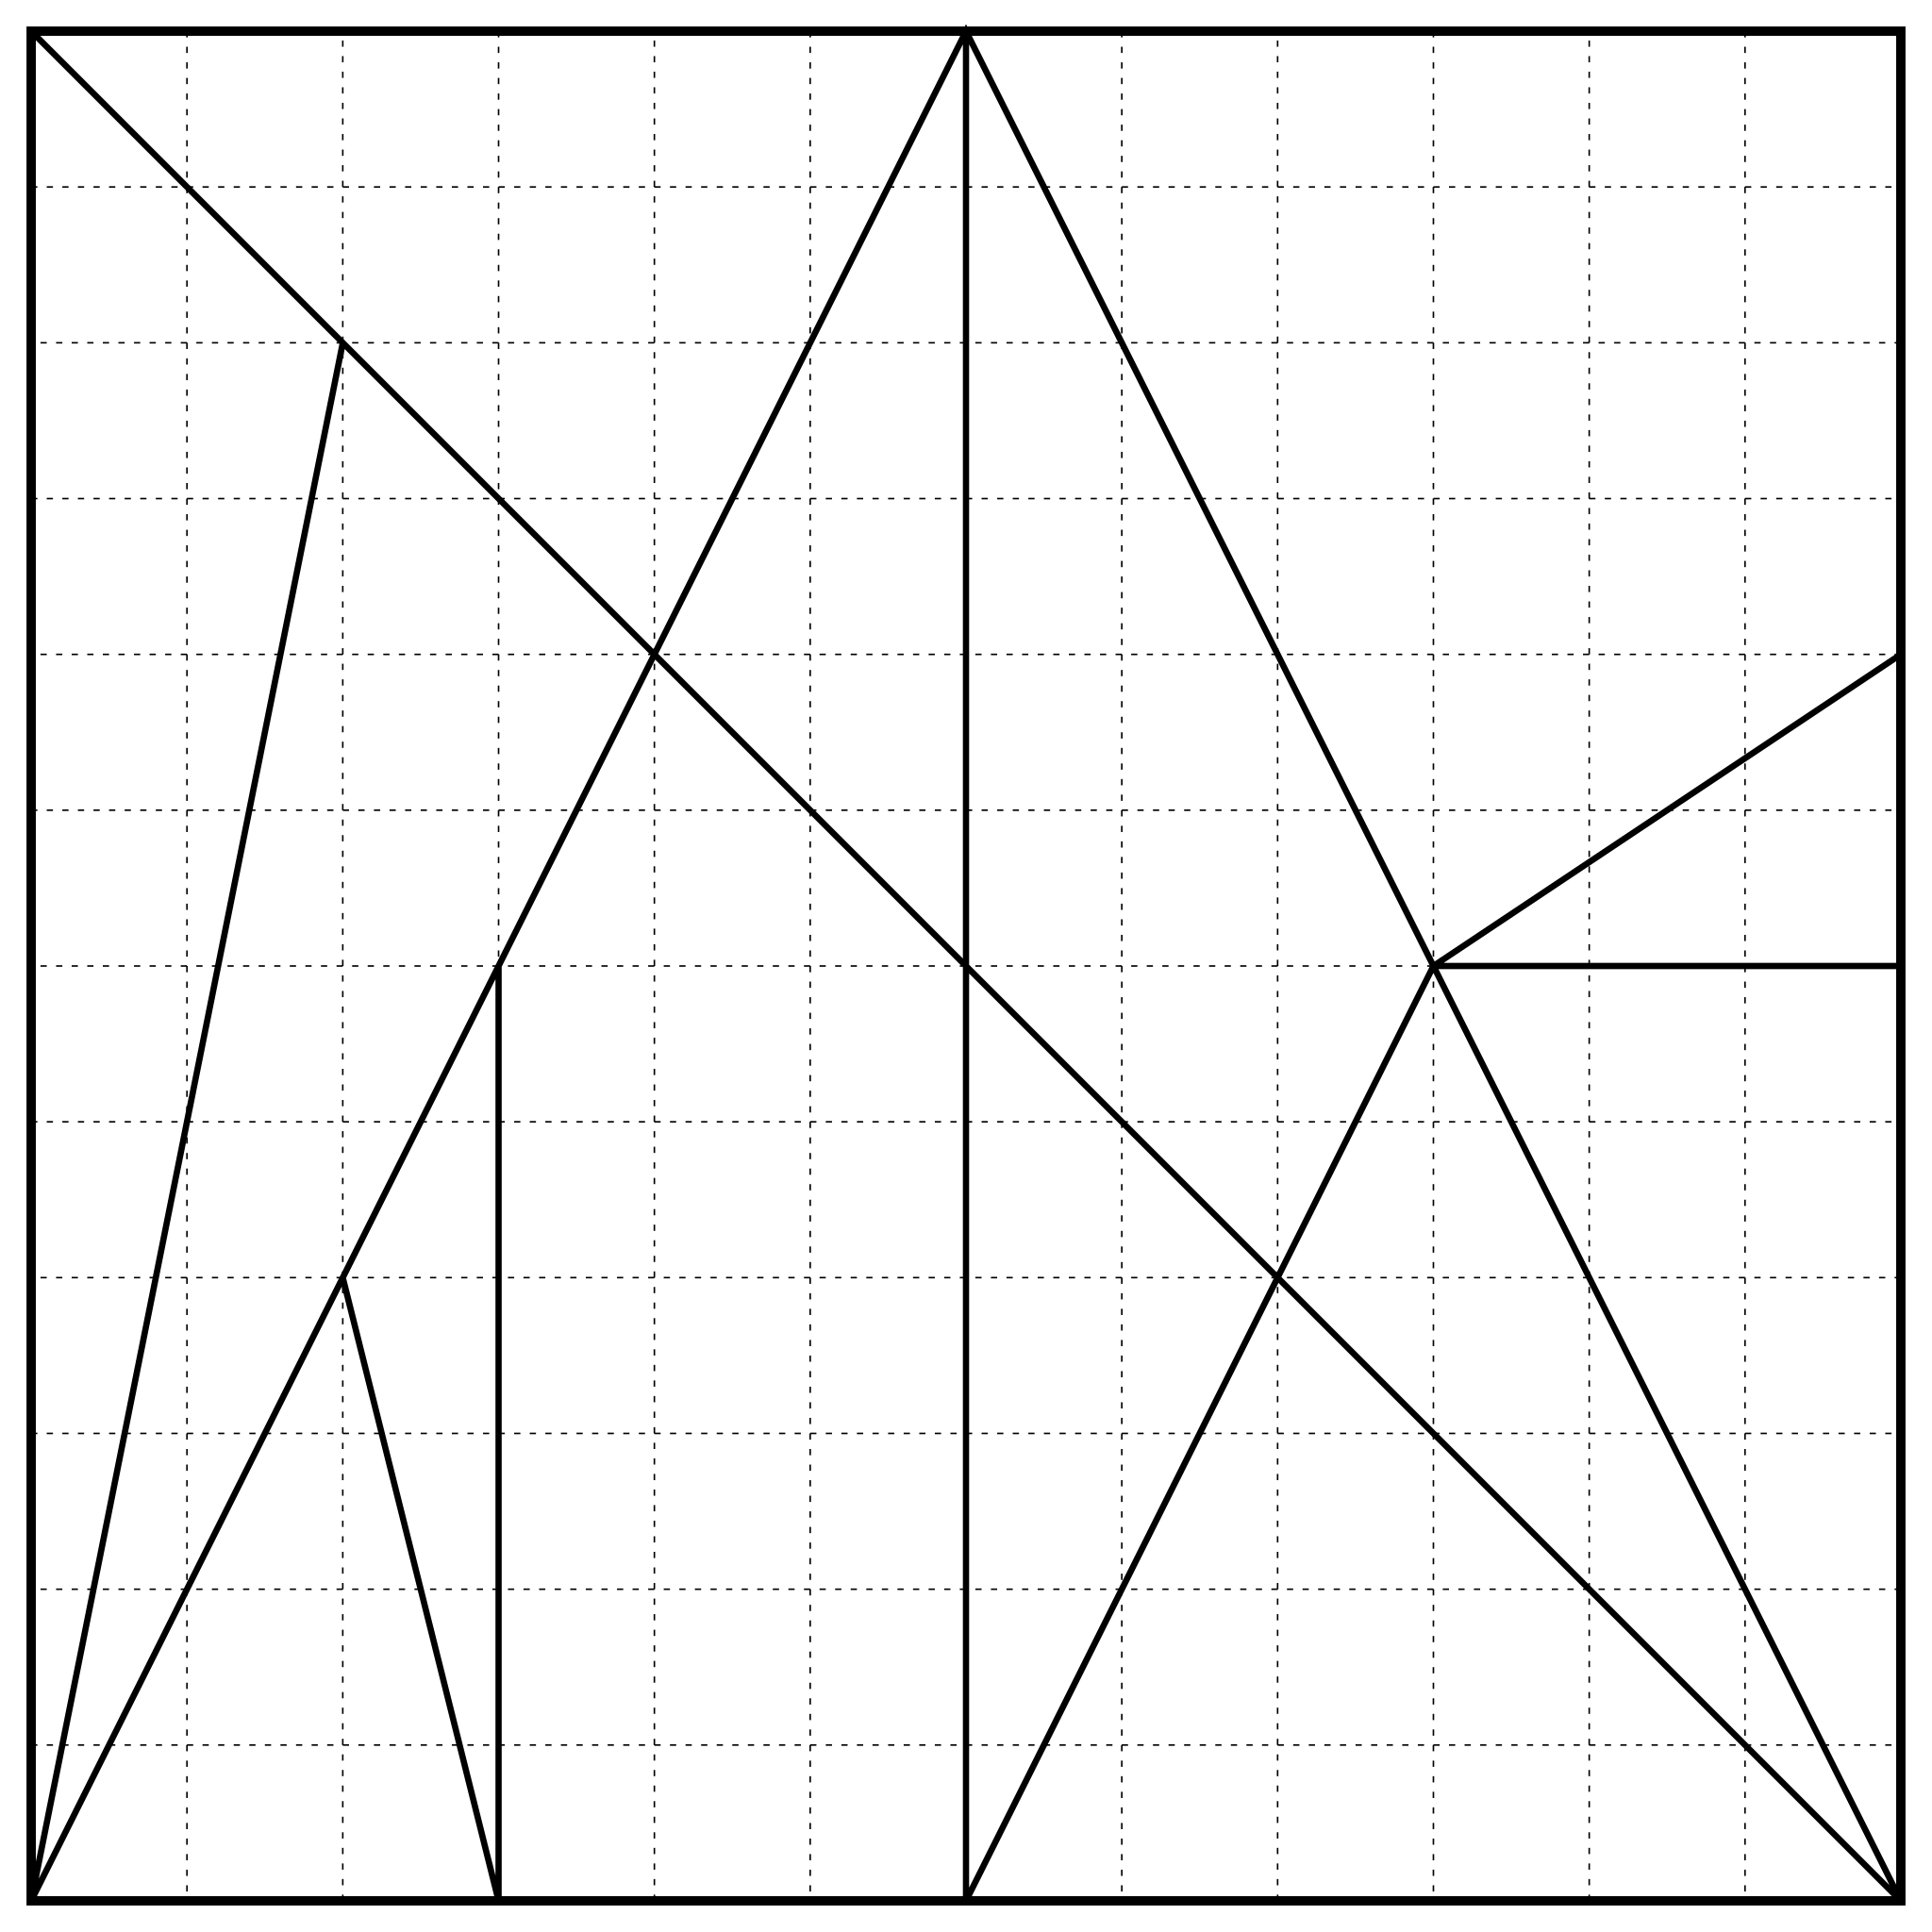 Die geometrische Darstellung des Stomachion-Diagramms — Das quadratische Blatt ist in geometrische Figuren, meist Dreiecke, unterteilt. Das Blatt ist mit einem 12x12 Gitternetz versehen, das mit feinen schwarzen gestrichelten Linien ausgeführt ist. Das Gitternetz besteht also aus 144 Quadraten. Vor diesen Hintergrund bilden durchgehende, breitere und schwarze Linien die geometrischen Figuren. Vier Linien durchschneiden die gesamte Fläche des quadratischen Blatts. Eine vertikale Senkrechte halbiert es in zwei Rechtecke. Diese wiederum werden durch Diagonalen in je zwei rechtwinklige Dreiecke geteilt. Im Rechteck links verläuft die Diagonale von links unten nach rechts oben, im Rechteck rechts von rechts unten nach links oben. Eine weitere Linie verläuft diagonal von links oben nach rechts unten über das quadratische Blatt. Sie schneidet die Diagonale im linken Rechteck und die vertikale Senkrechte. Außerdem teilt sie das Quadrat in zwei gleichschenklige Dreiecke. Die rechten Winkel dieser Dreiecke befinden sich links unten und rechts oben. Kürzere Linien unterteilen die so entstandenen Dreiecke in weitere unregelmäßige Dreiecke, zwei unregelmäßige Vierecke und ein unregelmäßiges Fünfeck. Sowohl in den beiden Rechtecken als auch in den beiden gleichschenkligen Dreiecken befinden sich sieben geometrische Figuren. —— The geometric representation of the Stomachion diagram — The square sheet is divided into geometric figures, mostly triangles. The sheet has a 12x12 grid with fine black dotted lines. The grid thus consists of 144 squares. Overlaid on this grid background, there are continuous, broader, and black lines that form the geometric figures. Four lines cut through the entire surface of the square sheet. A vertical perpendicular line divides it into two rectangles. These, in turn, are divided by diagonal lines into two right-angled triangles each. In the rectangle on the left, the diagonal runs from the bottom left to the top right. In the rectangle on the right, the diagonal runs from the bottom right to the top left. Across the entire square sheet, another line runs diagonally from the top left to the bottom right. It intersects the diagonal in the left rectangle and the vertical perpendicular. It also divides the entire square sheet into two isosceles triangles. The right angles of these triangles are at the bottom left and top right. Shorter lines divide the triangles, thus creating further irregular triangles, two irregular squares, and an irregular pentagon. There are seven geometric figures in both of the two rectangles and the two isosceles triangles.  